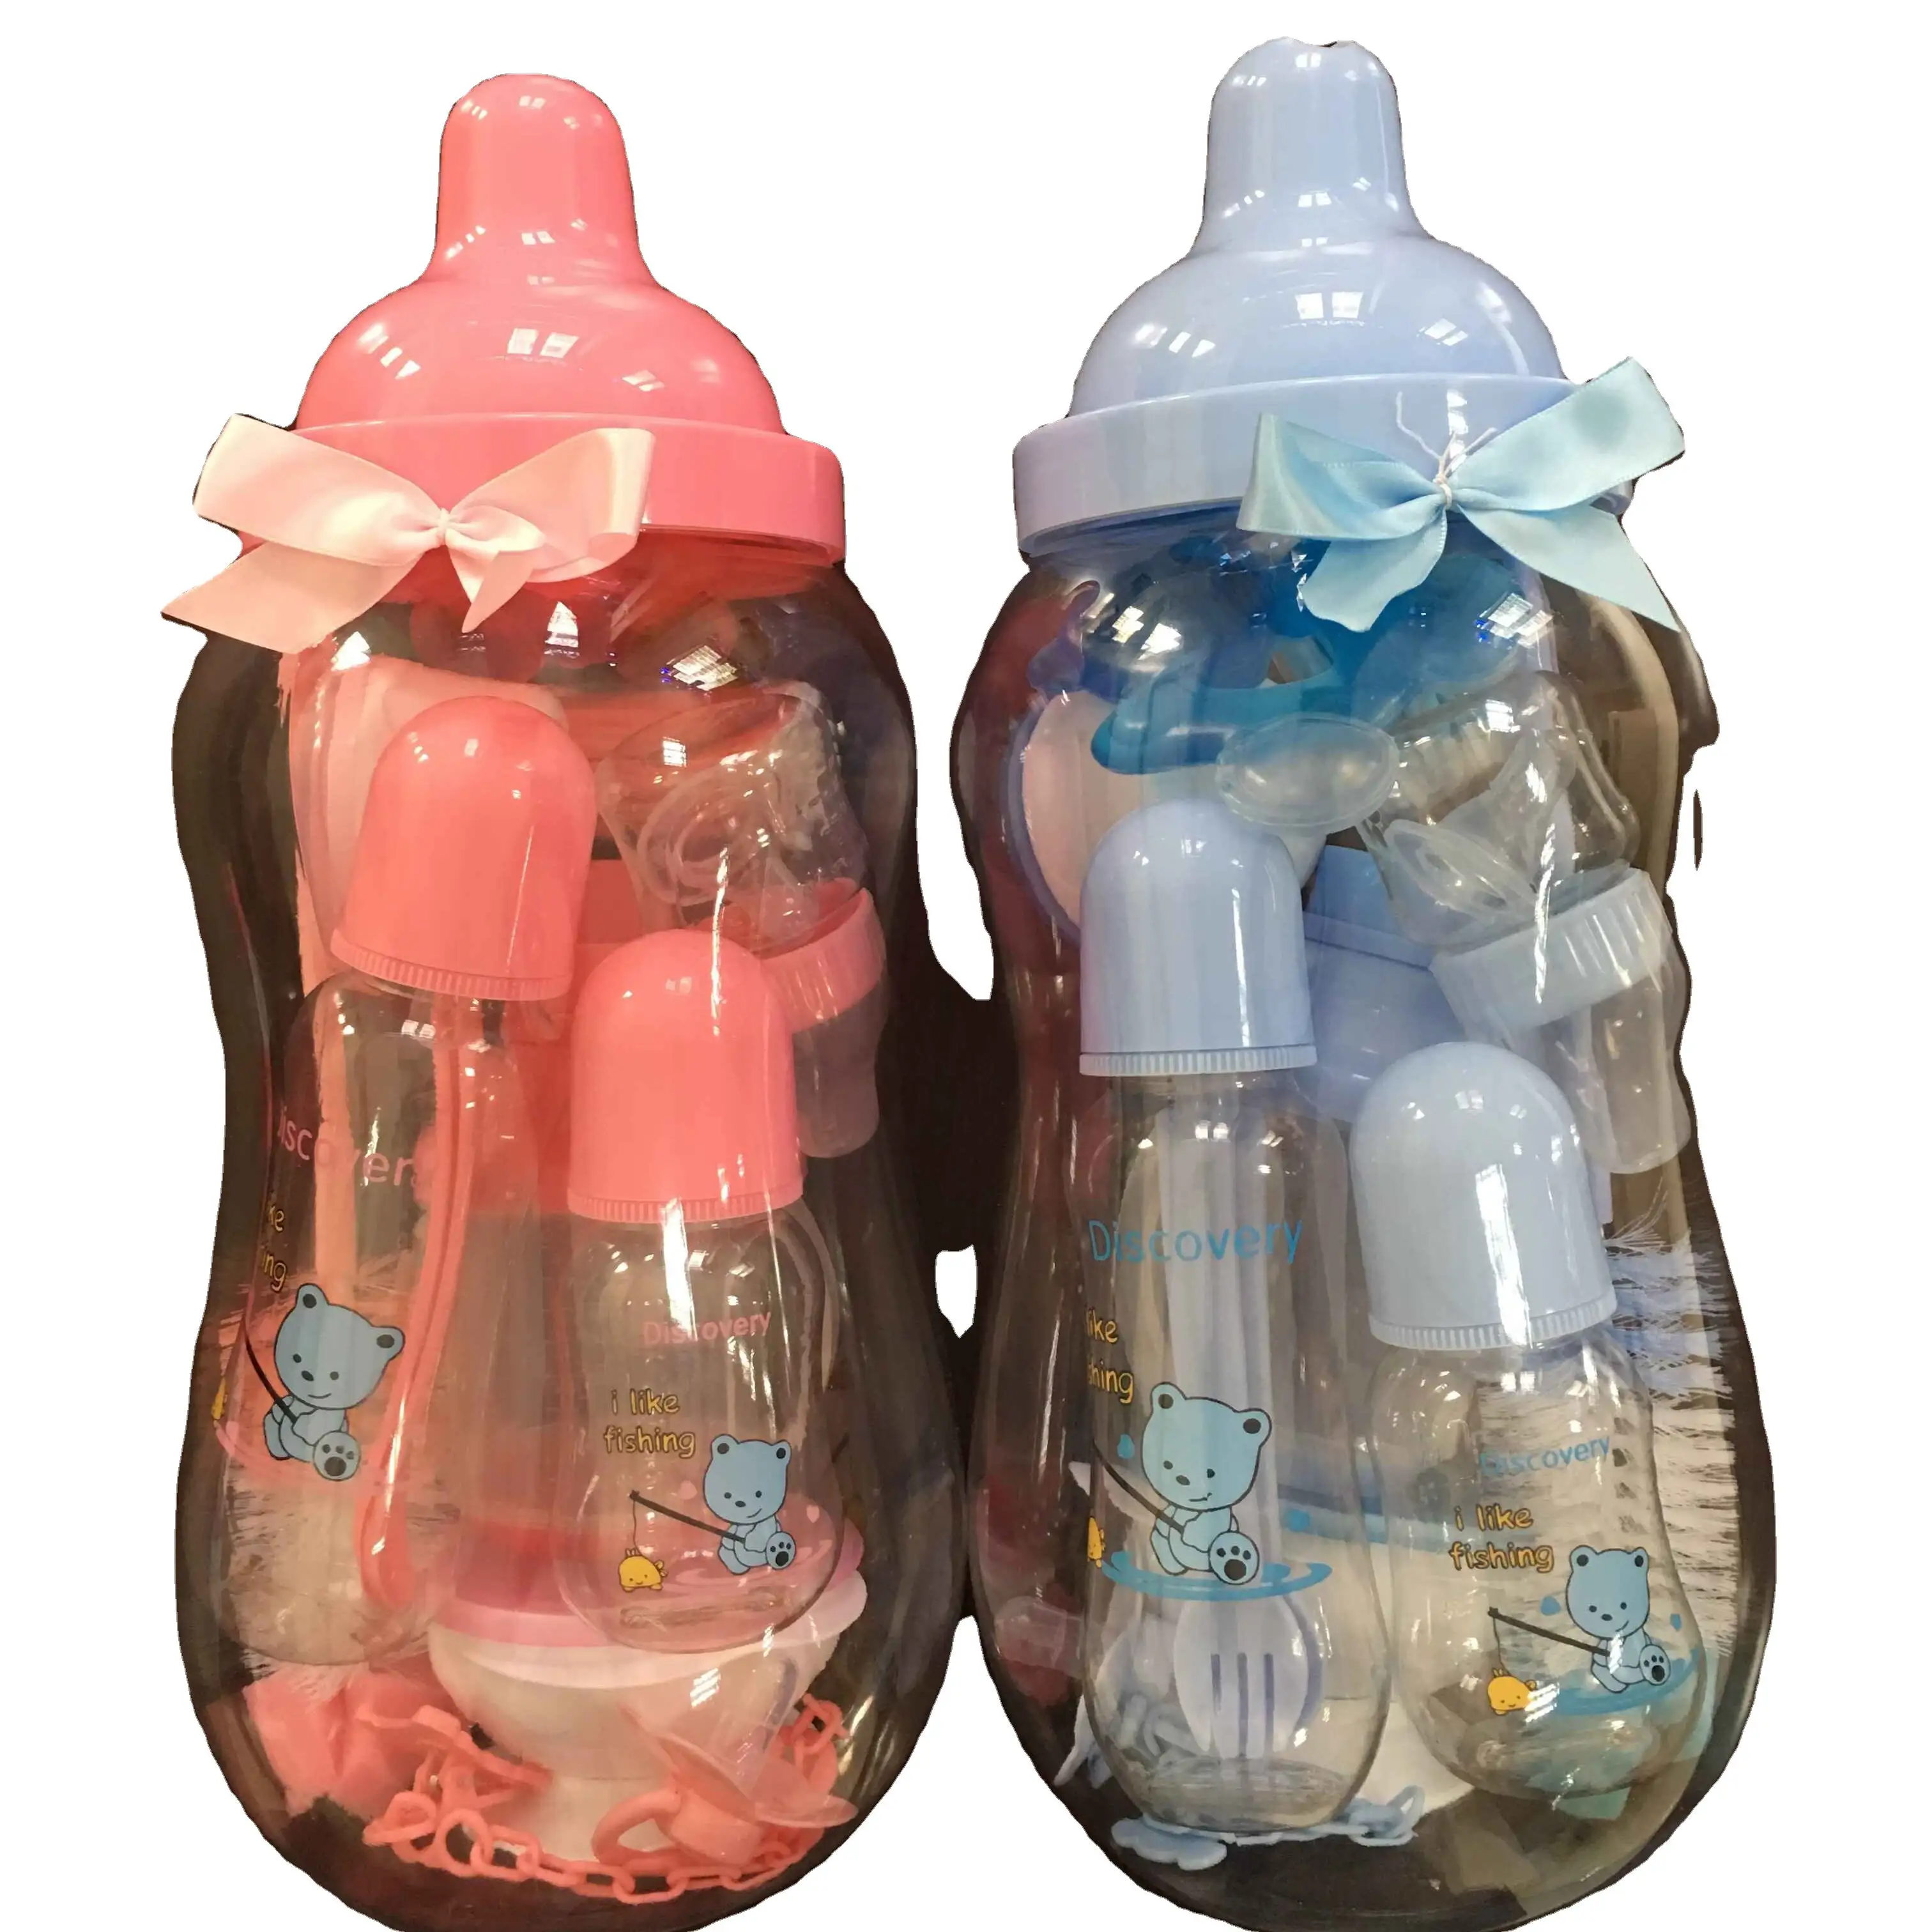 पीसी प्लास्टिक सजावट dollsa गुड़िया बैंक खिला बच्चे को बड़ी बोतल कप सेट के साथ छोटे खिला की बोतलें